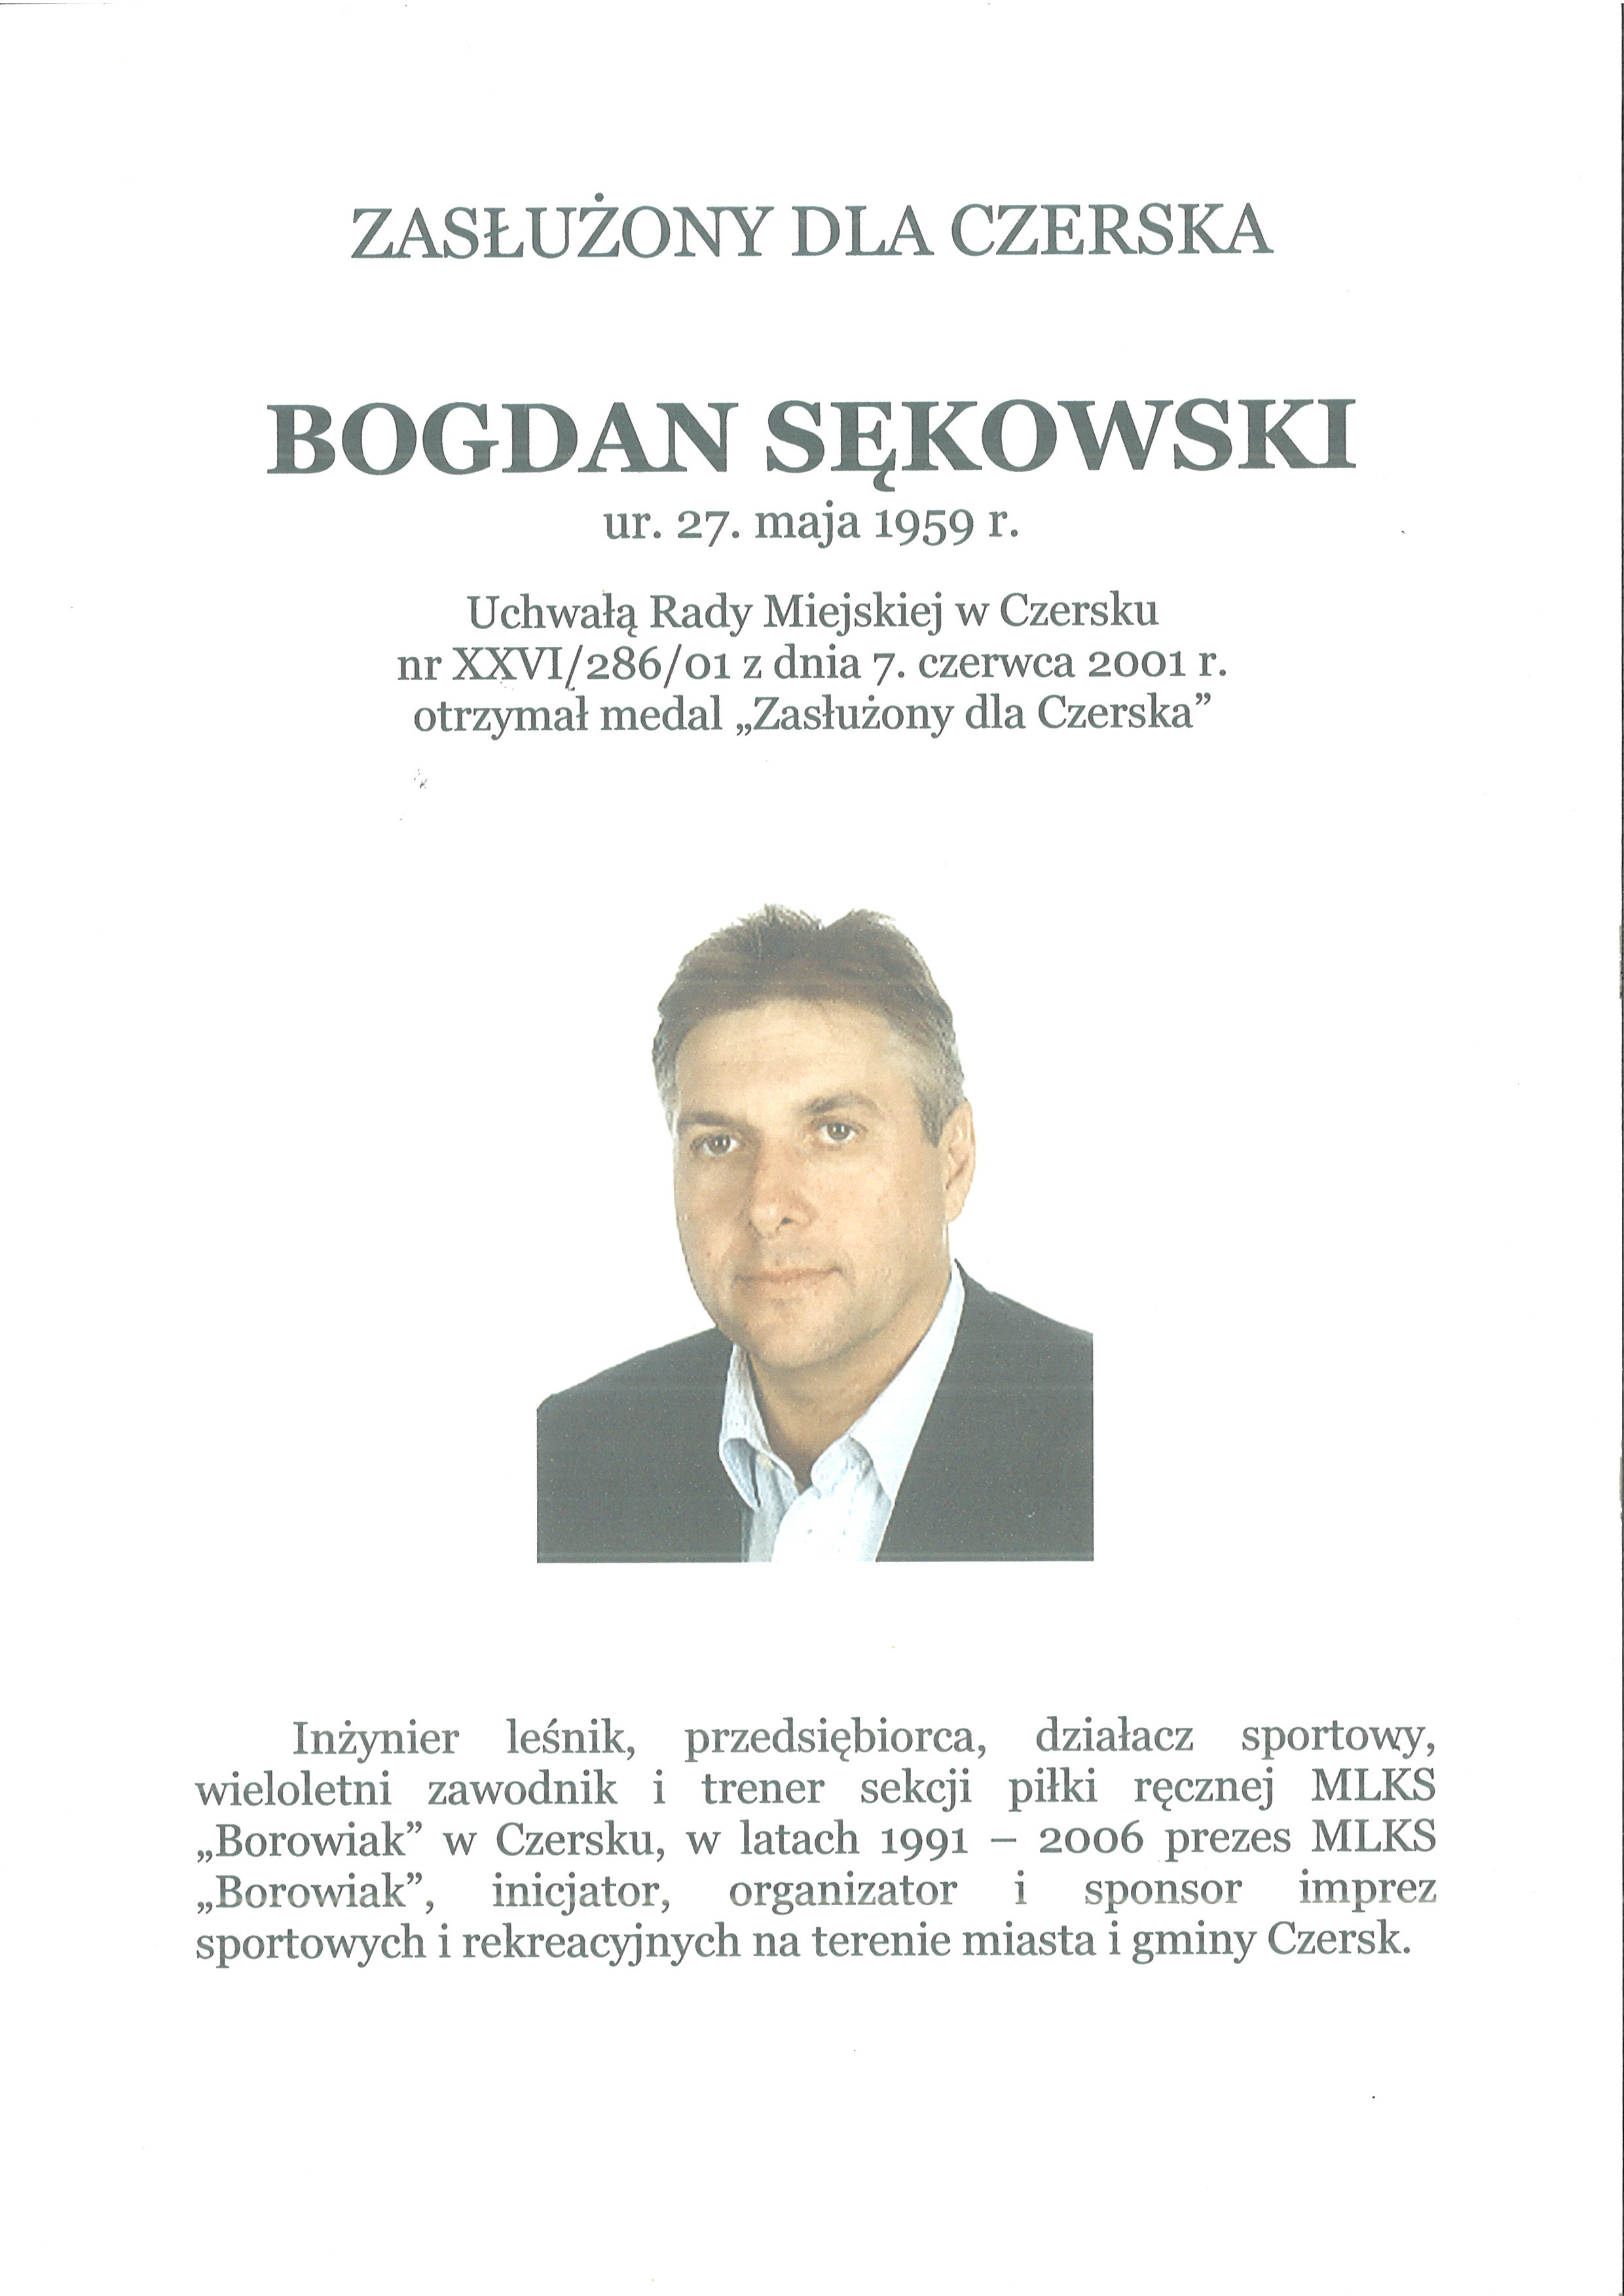 Bogdan Sękowski